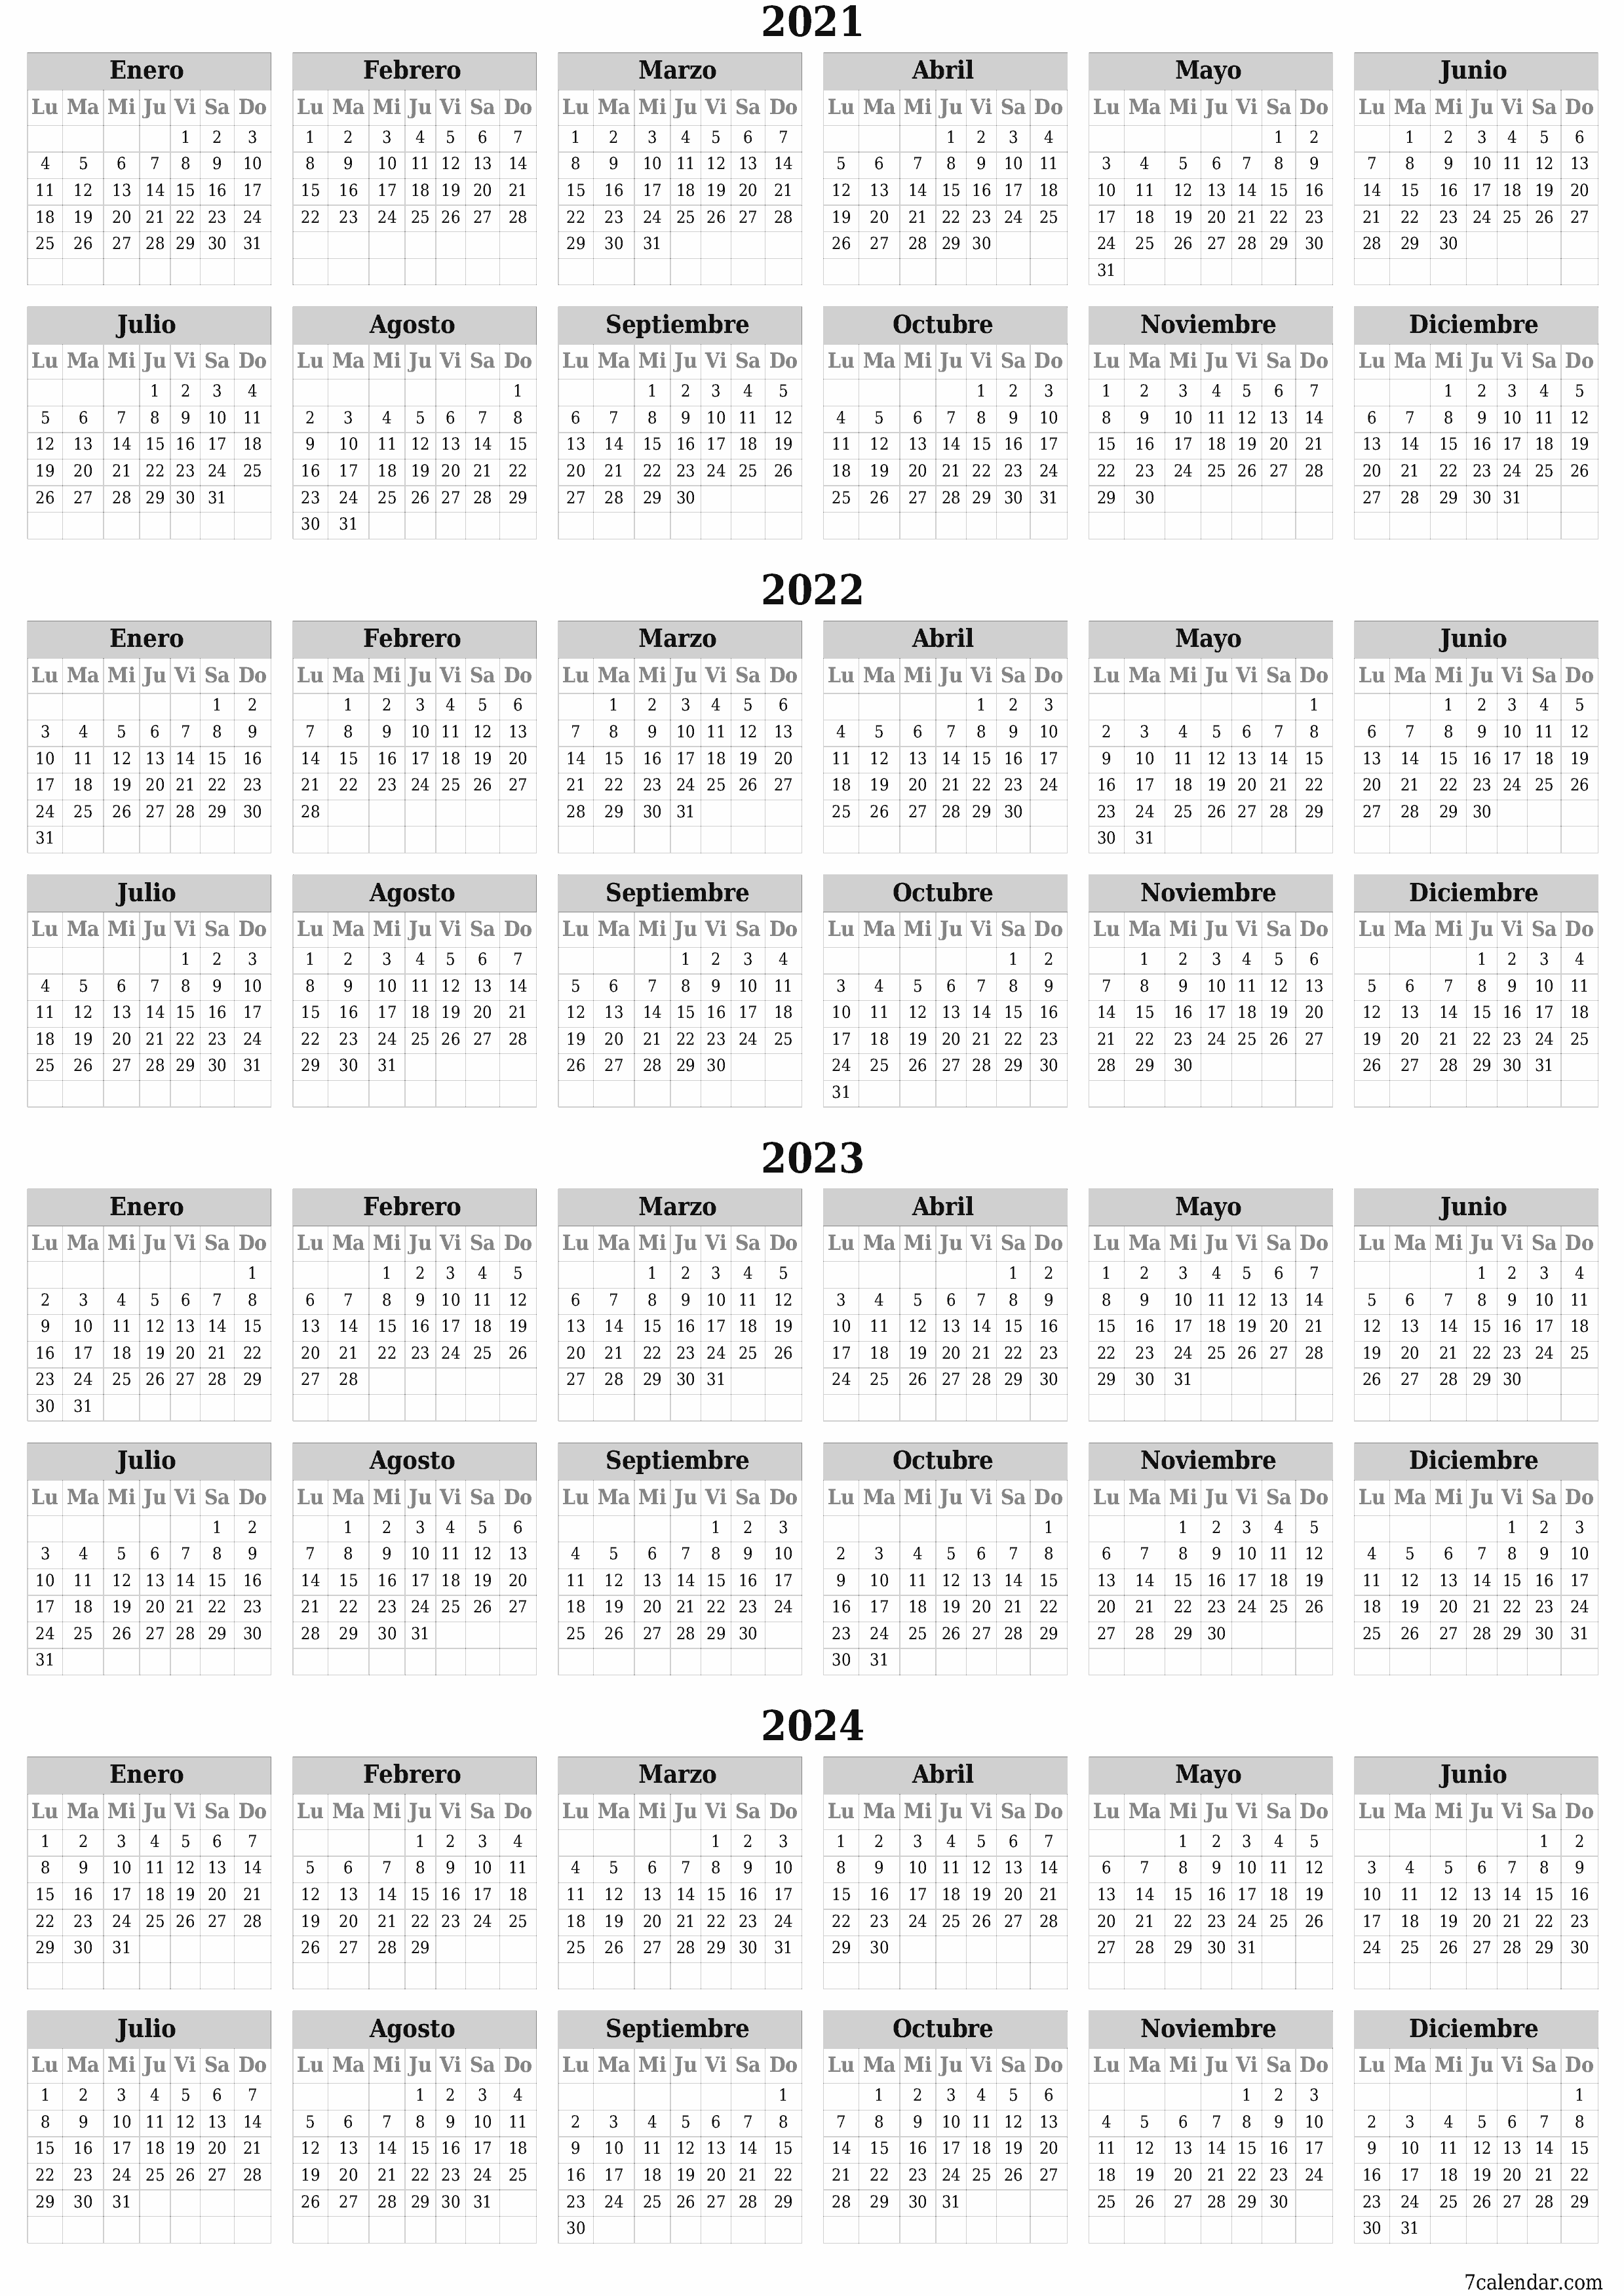  imprimible de pared plantilla de gratisvertical Anual calendario Diciembre (Dic) 2021